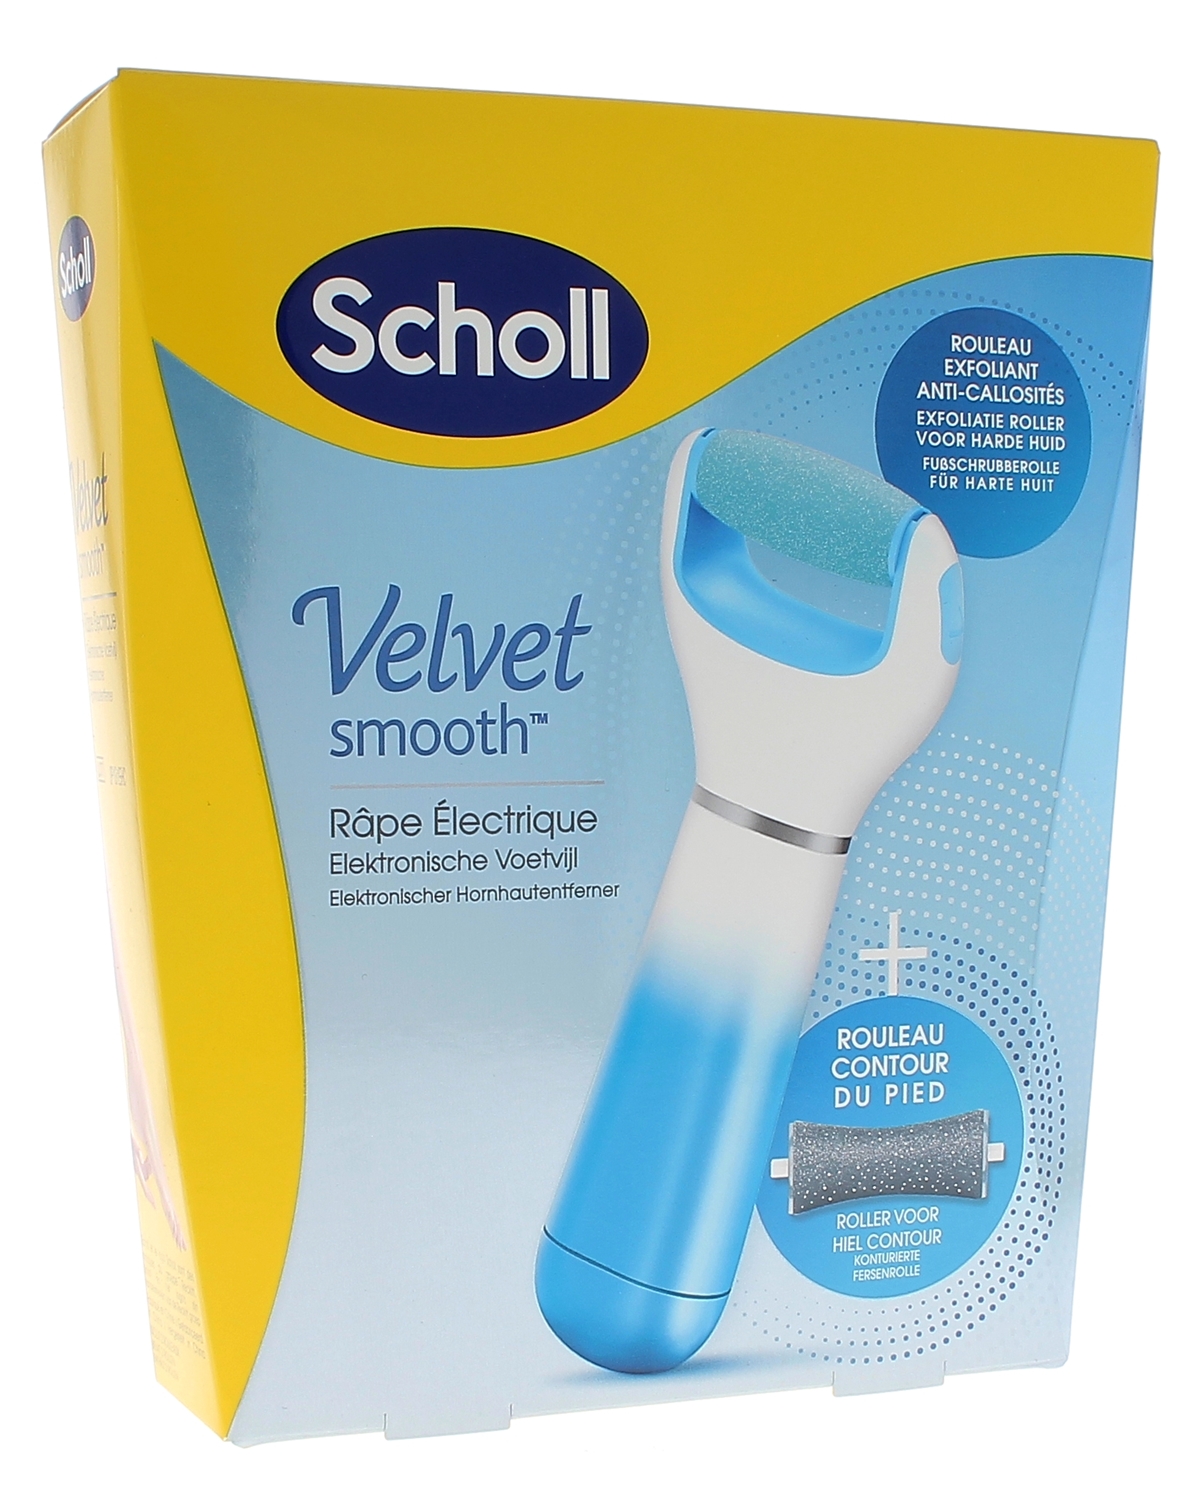 Velvet smooth express pedi râpe électrique anti-callosités Scholl - 1 râpe bleue